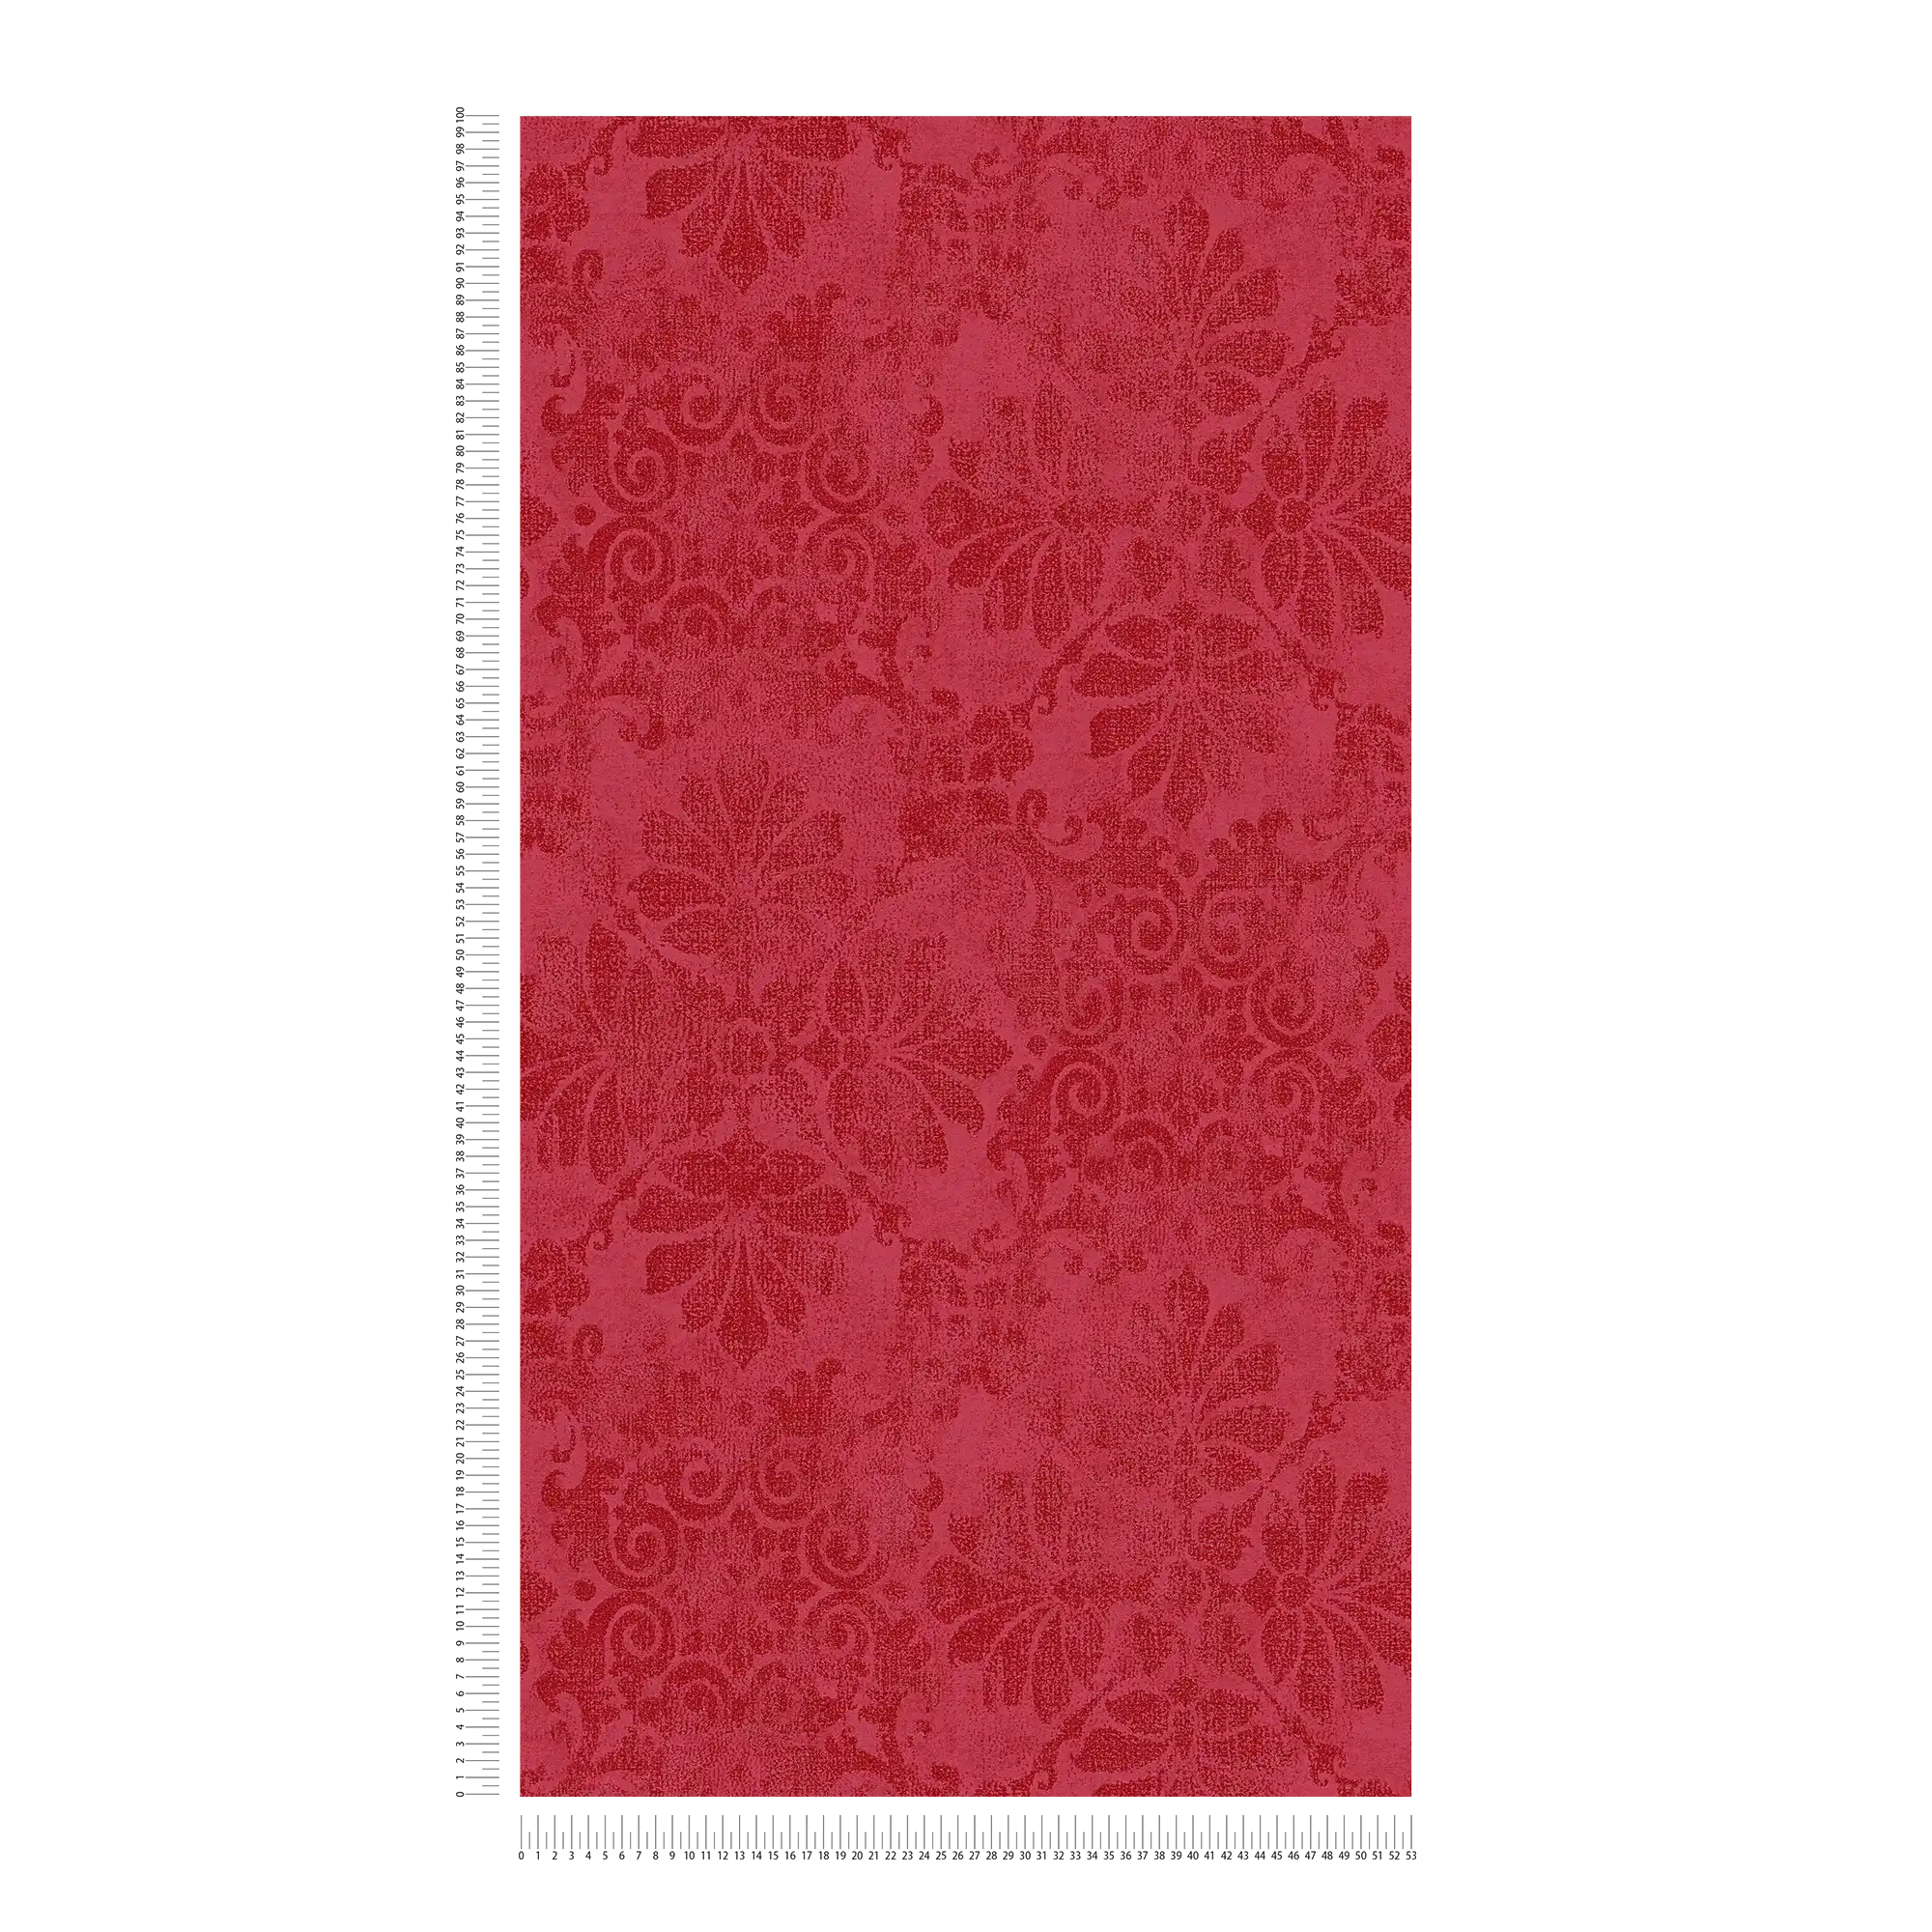             Papier peint à motifs avec ornements floraux dans le style vintage - rouge, métallique
        